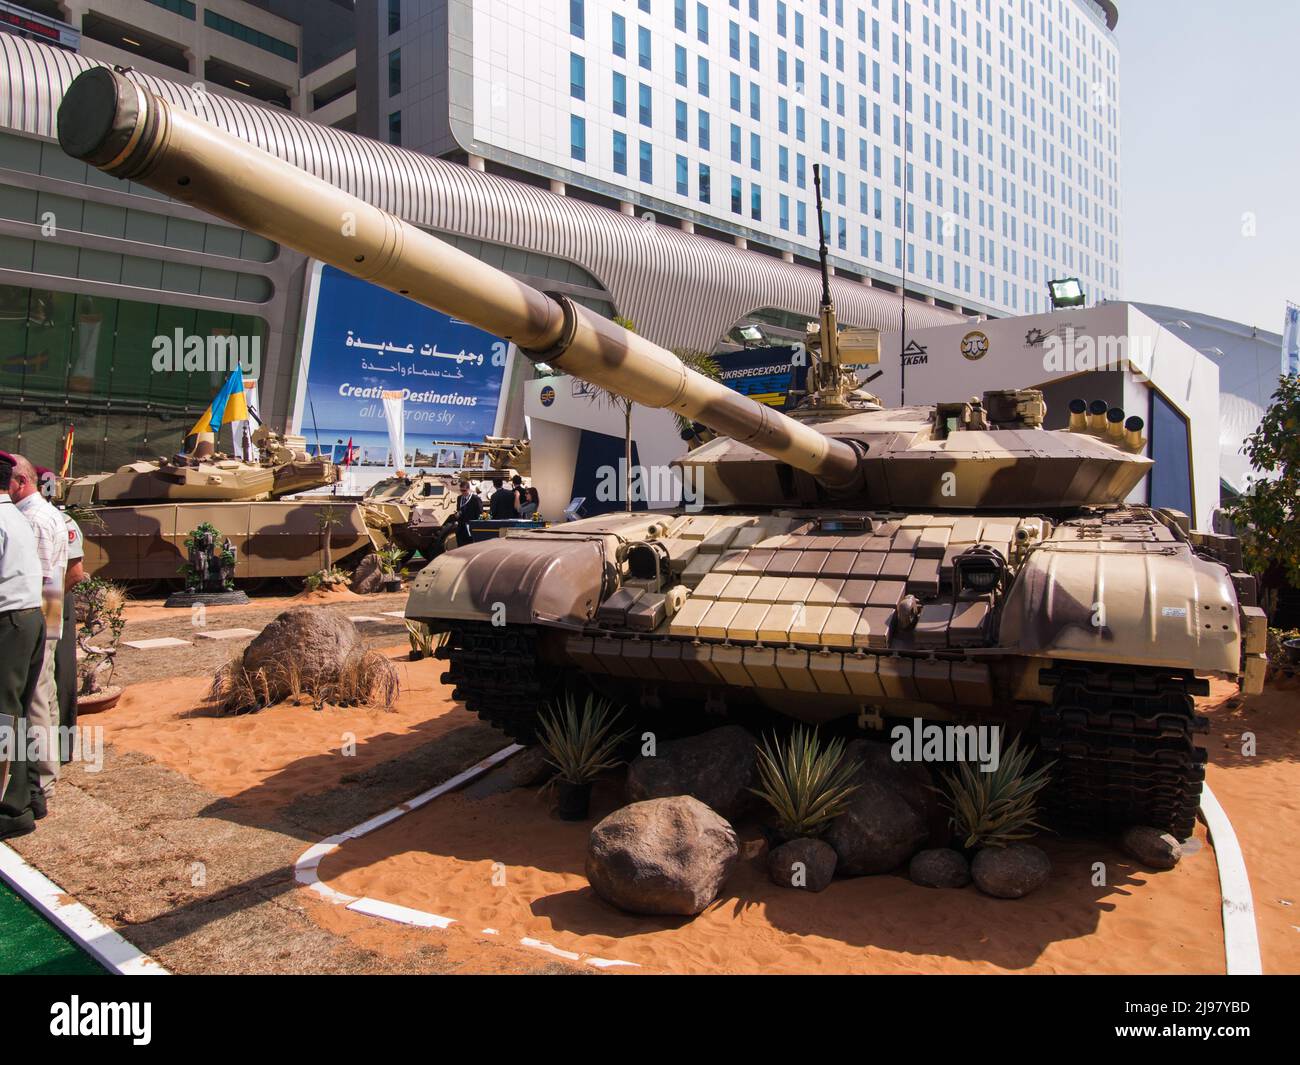 Abu Dhabi, VAE - 23. Februar. 2011: Ukrainische Armee T-72B auf der IDEX 2011 Militärausstellung Stockfoto